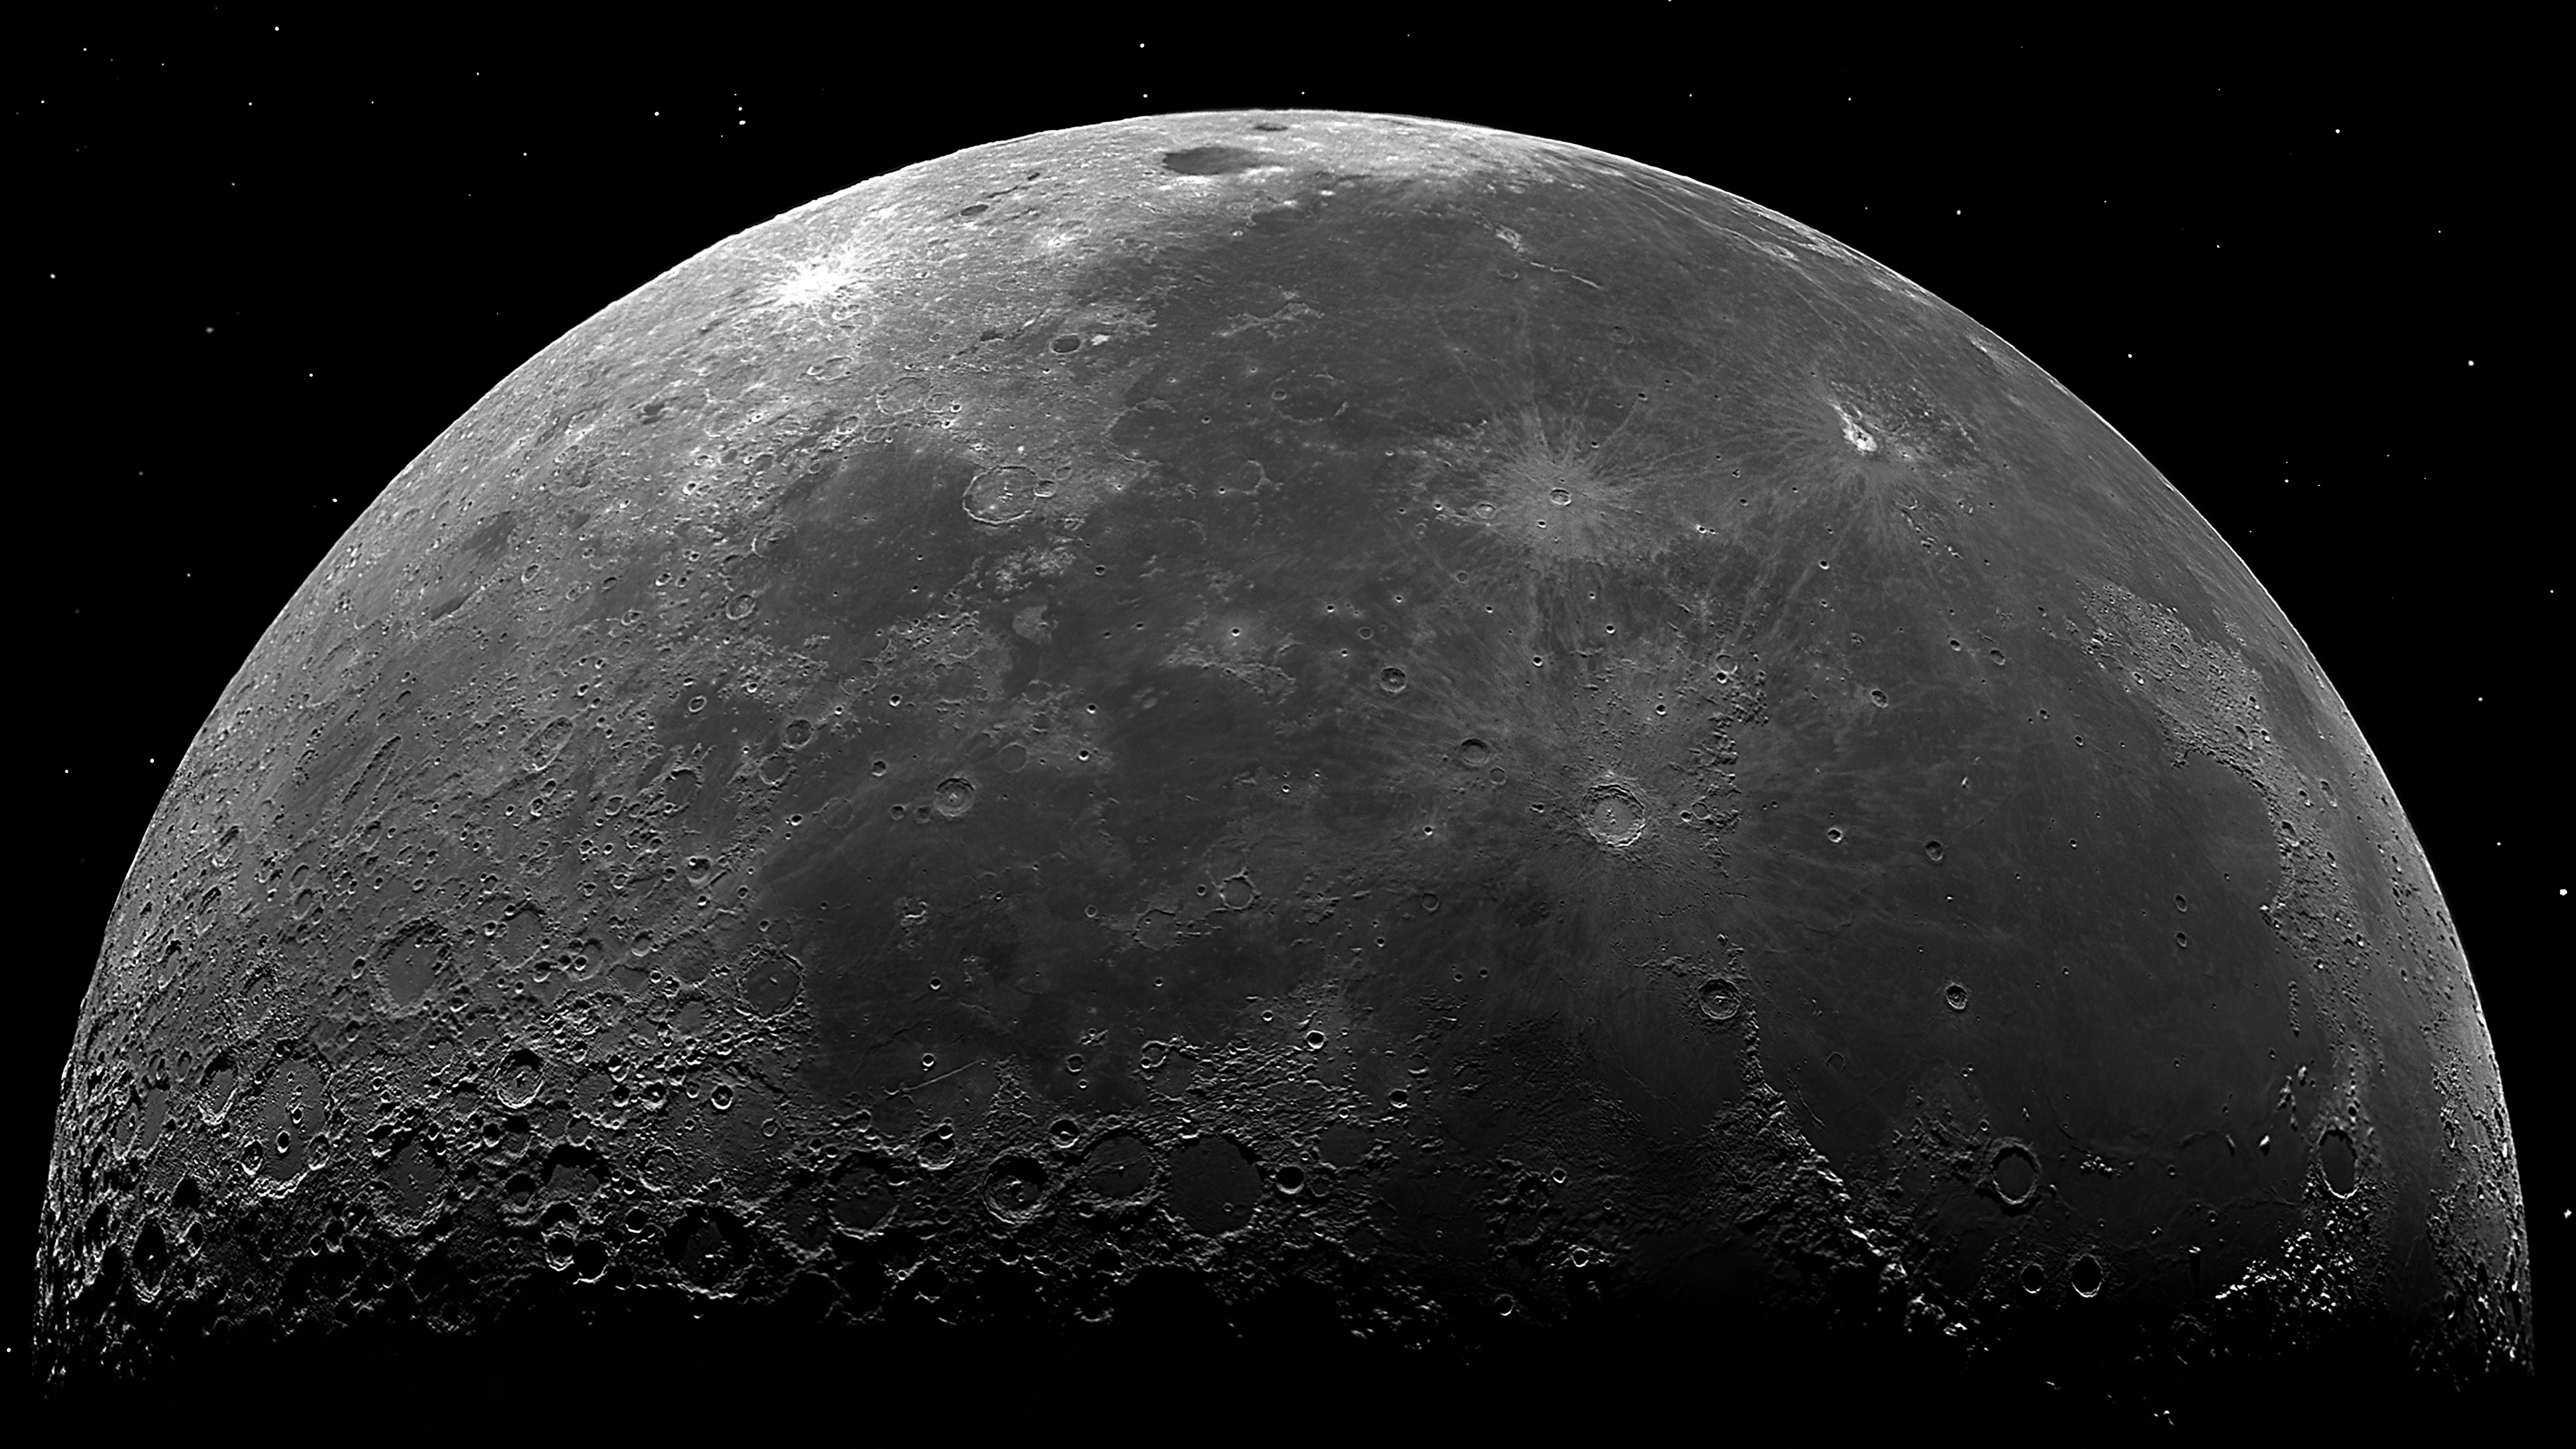 Hình nền Mặt trăng 4K: Hình ảnh Mặt trăng chân thật với độ phân giải 4K đầy sáng tạo và tinh tế sẽ đem lại trải nghiệm đẹp mắt cho người dùng. Với tông màu đen trắng cổ điển, hình nền Mặt trăng 4K sẽ giúp bạn có một không gian làm việc thanh lịch và tao nhã.